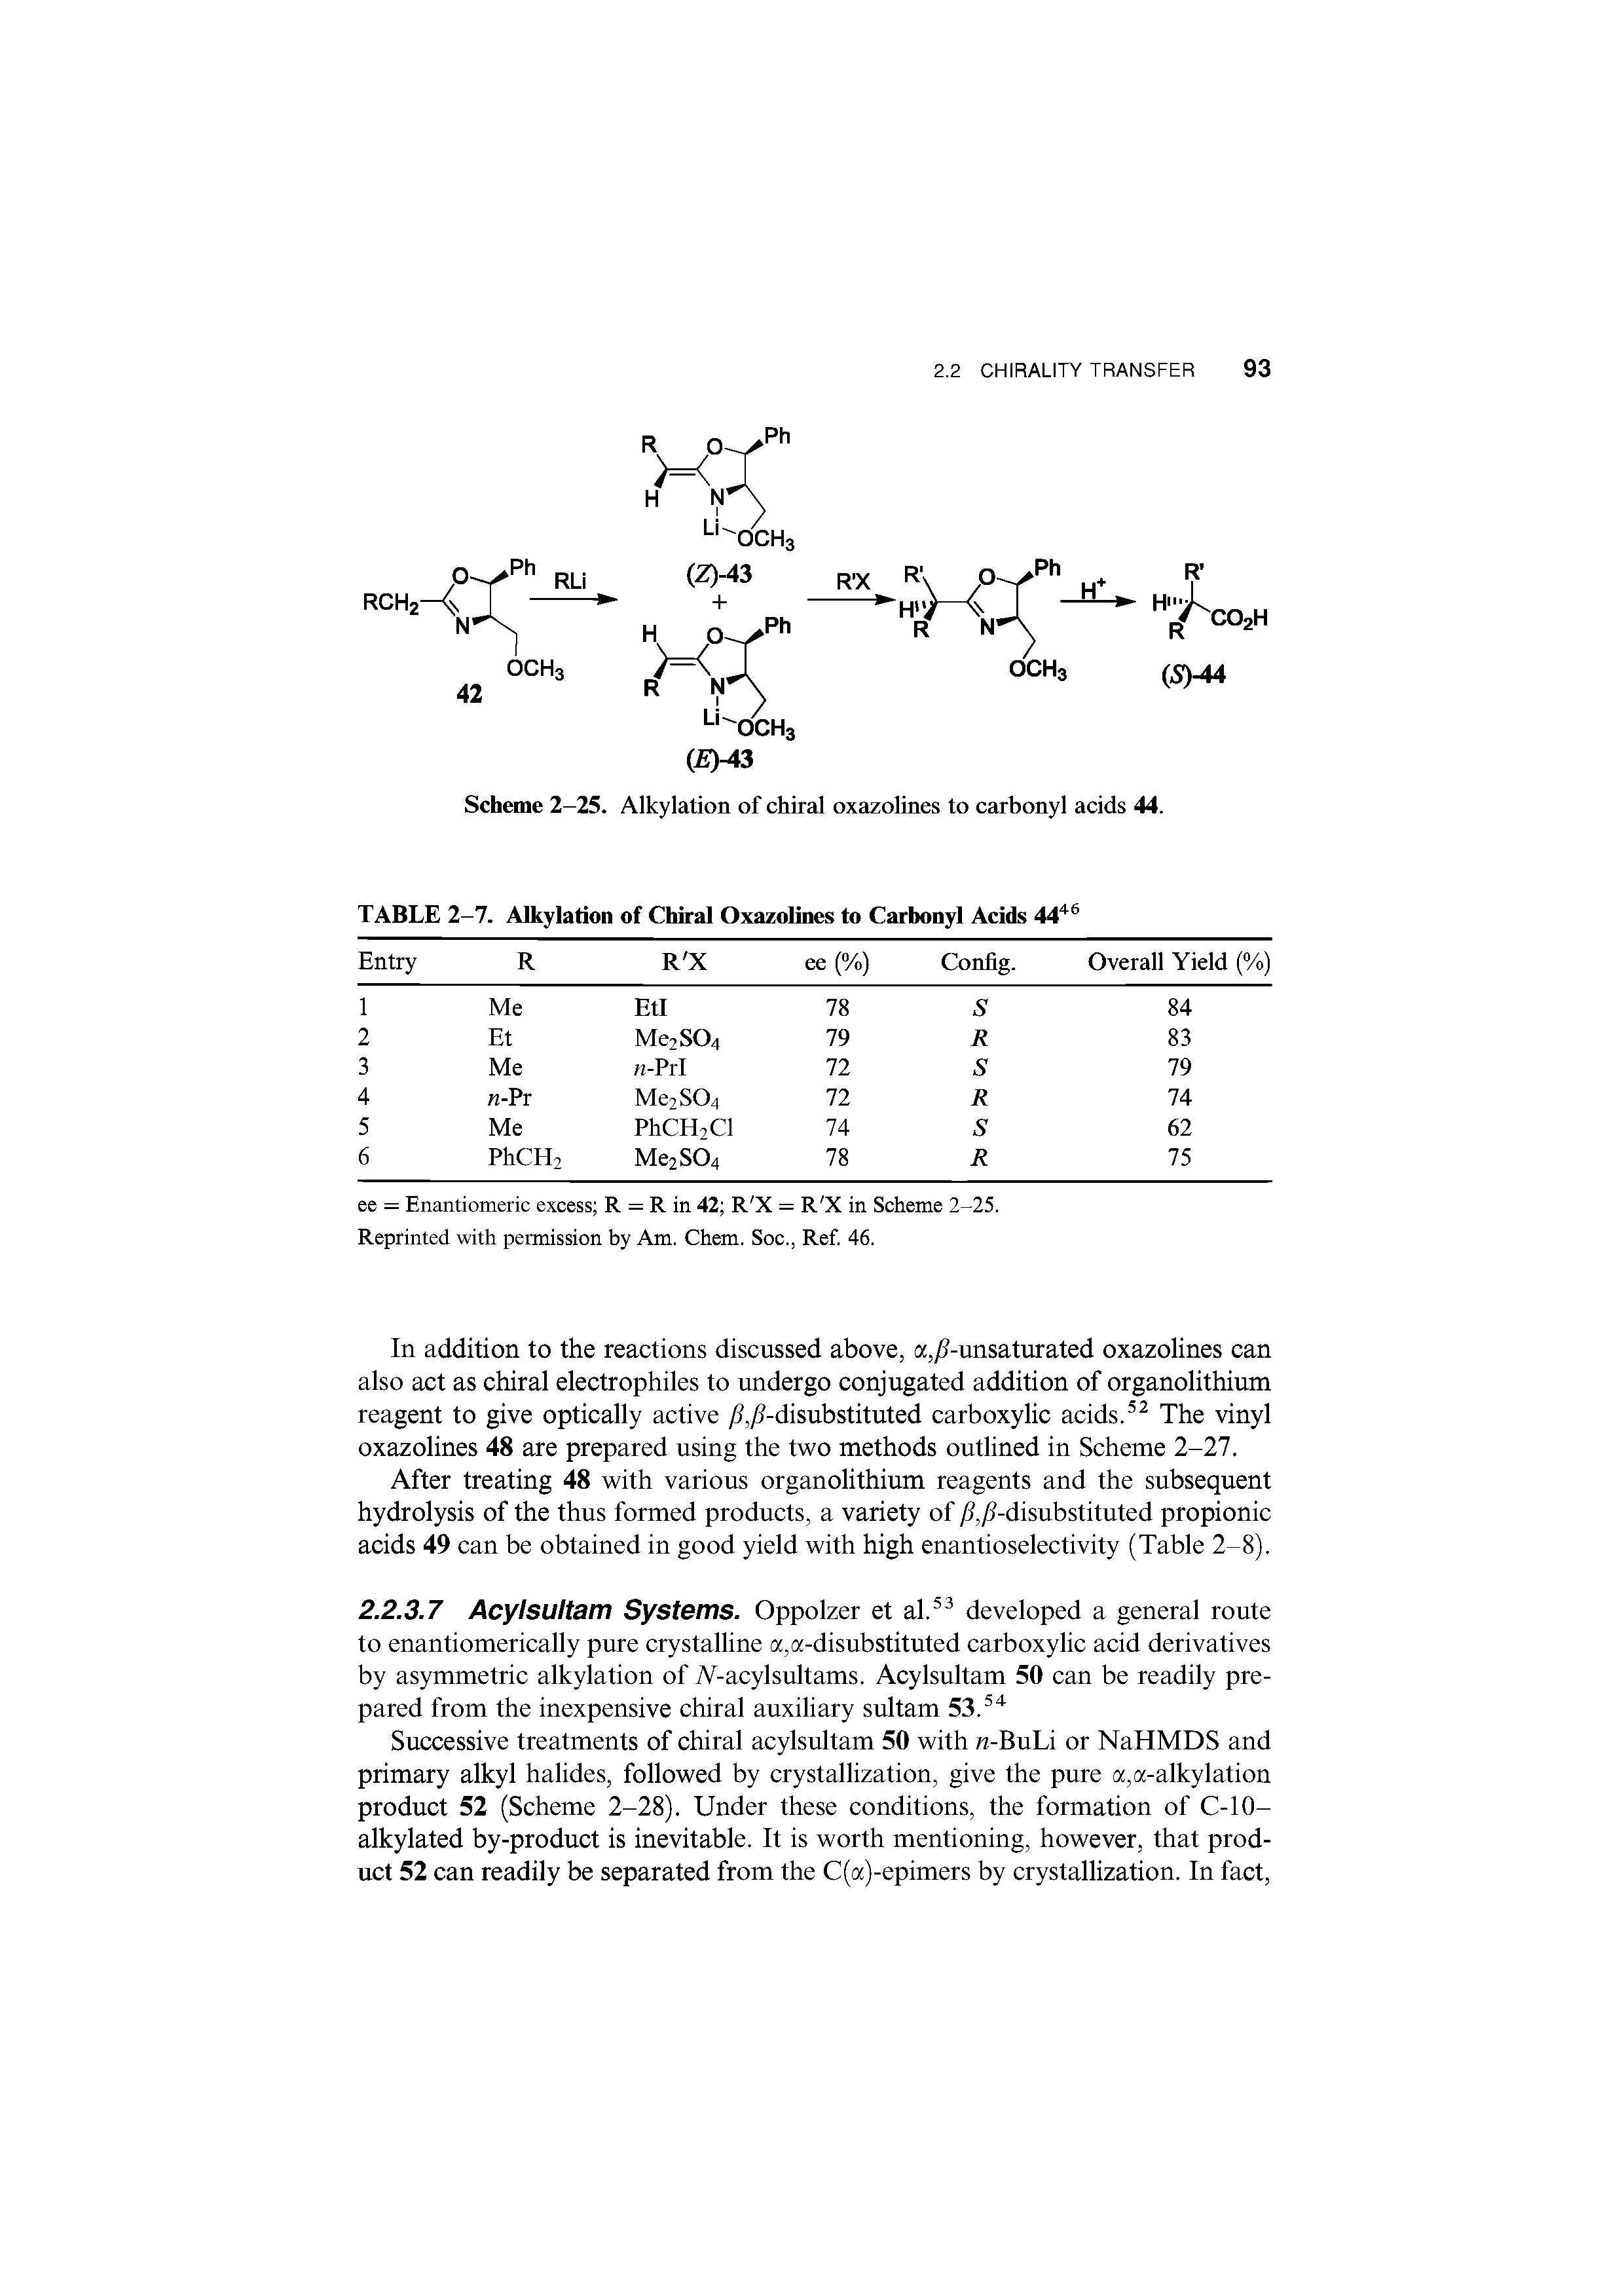 Scheme 2-25. Alkylation of chiral oxazolines to carbonyl acids 44.